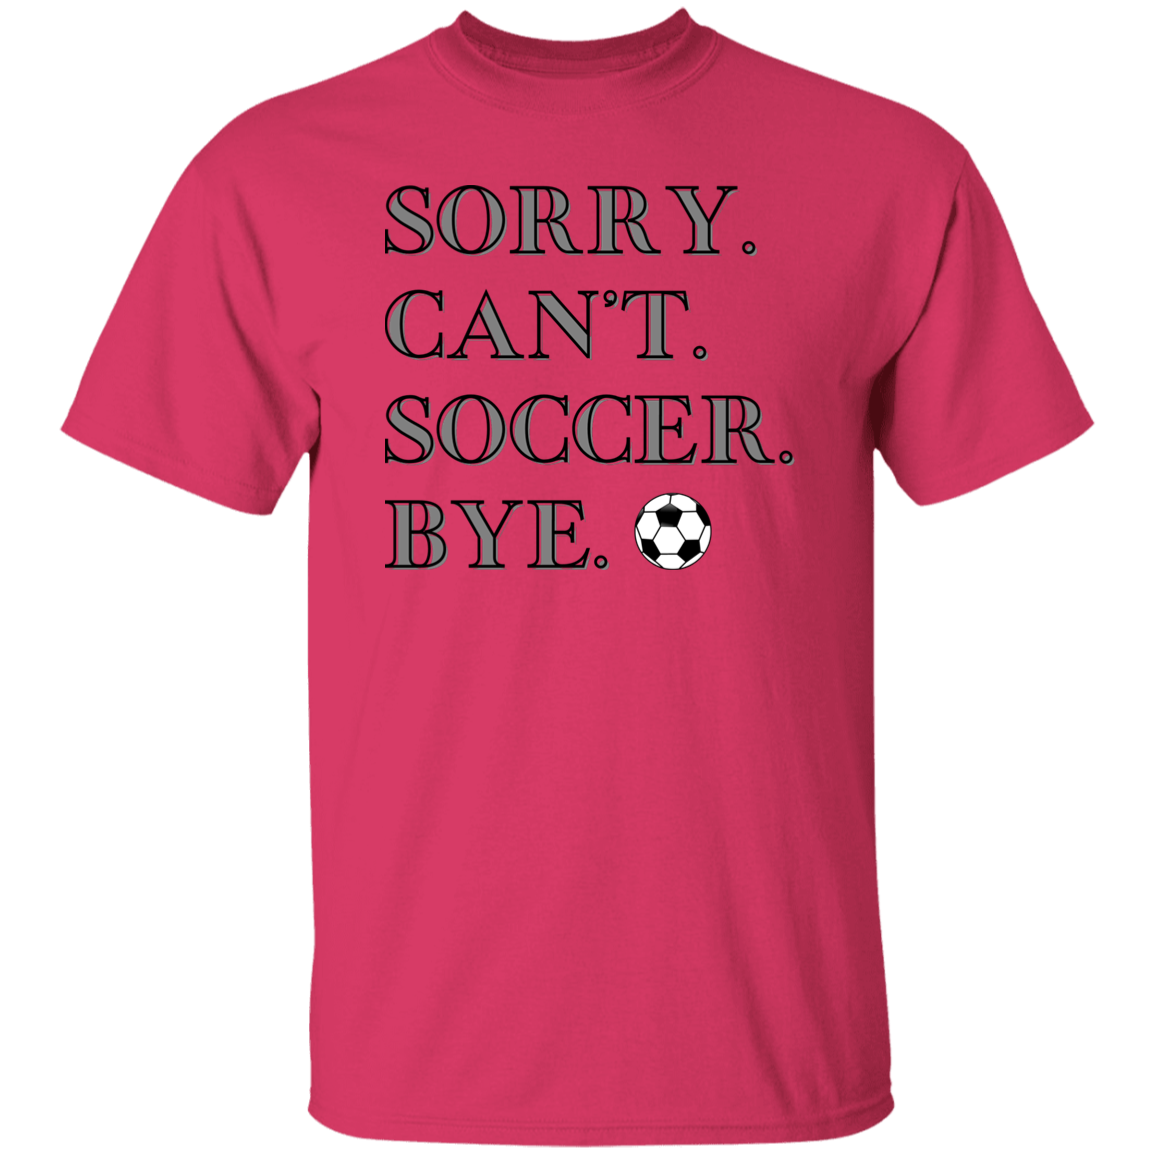 Can't Soccer Short Sleeve T-Shirt